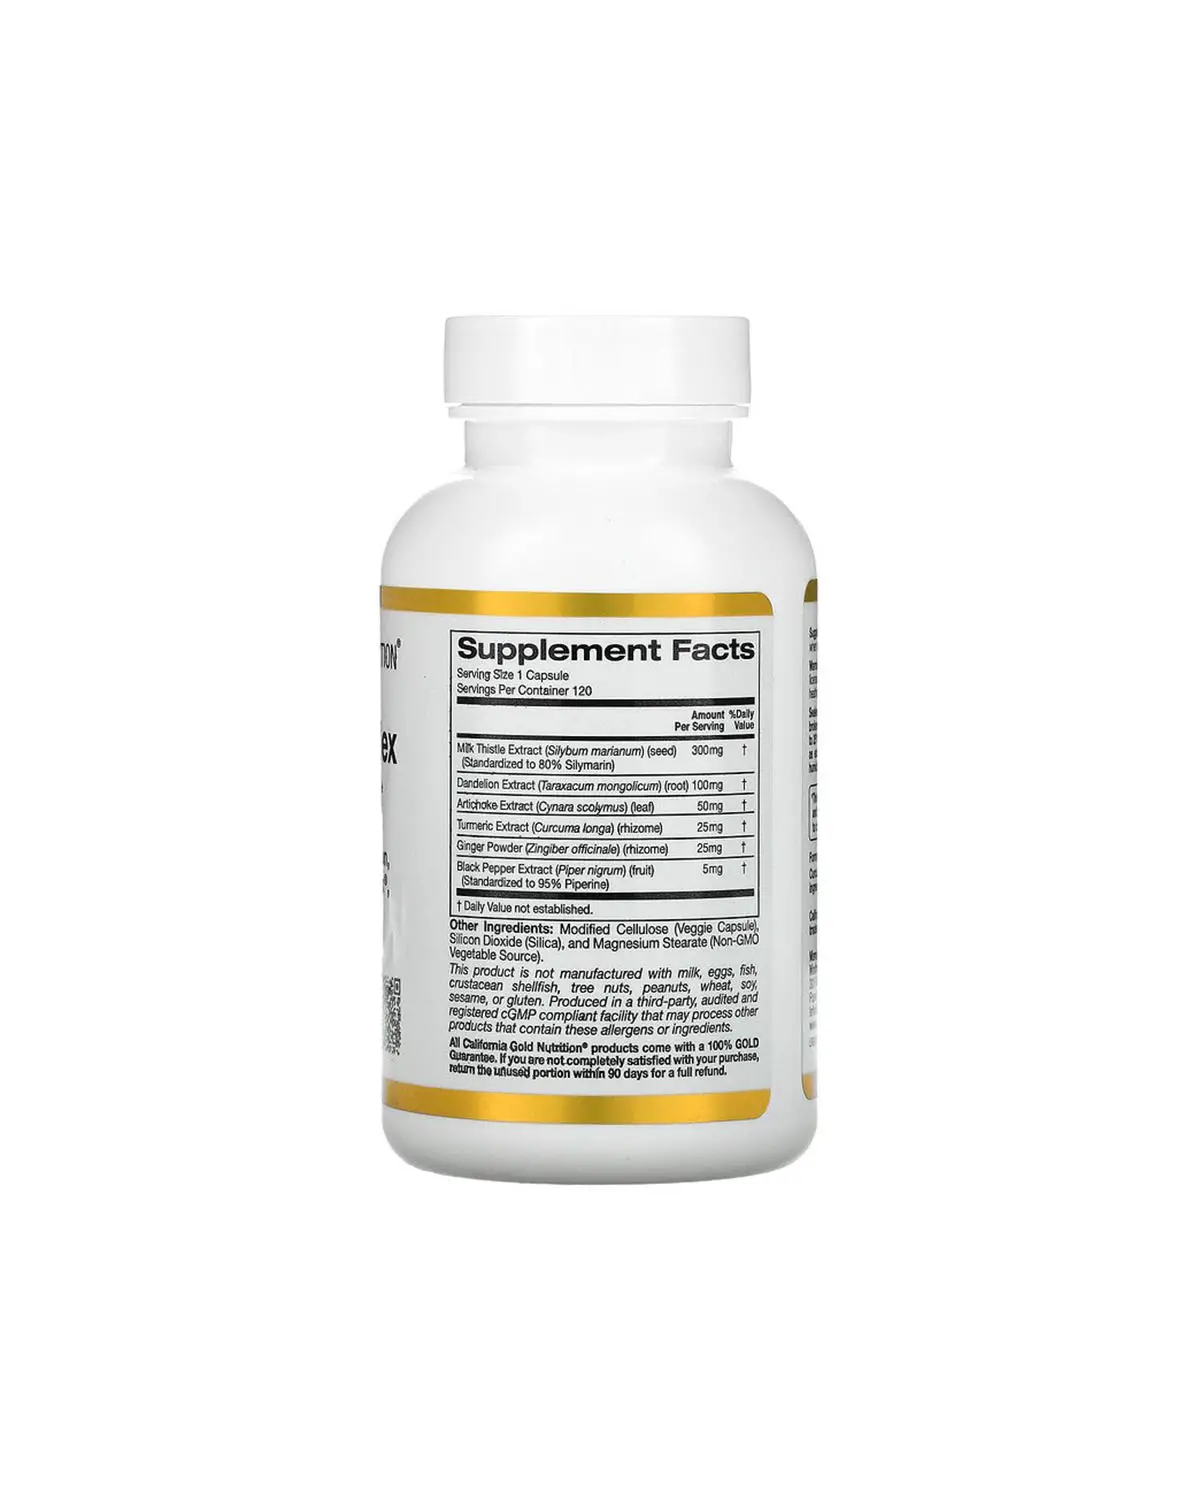 Силимариновый комплекс (расторопша) 300 мг | 120 кап California Gold Nutrition